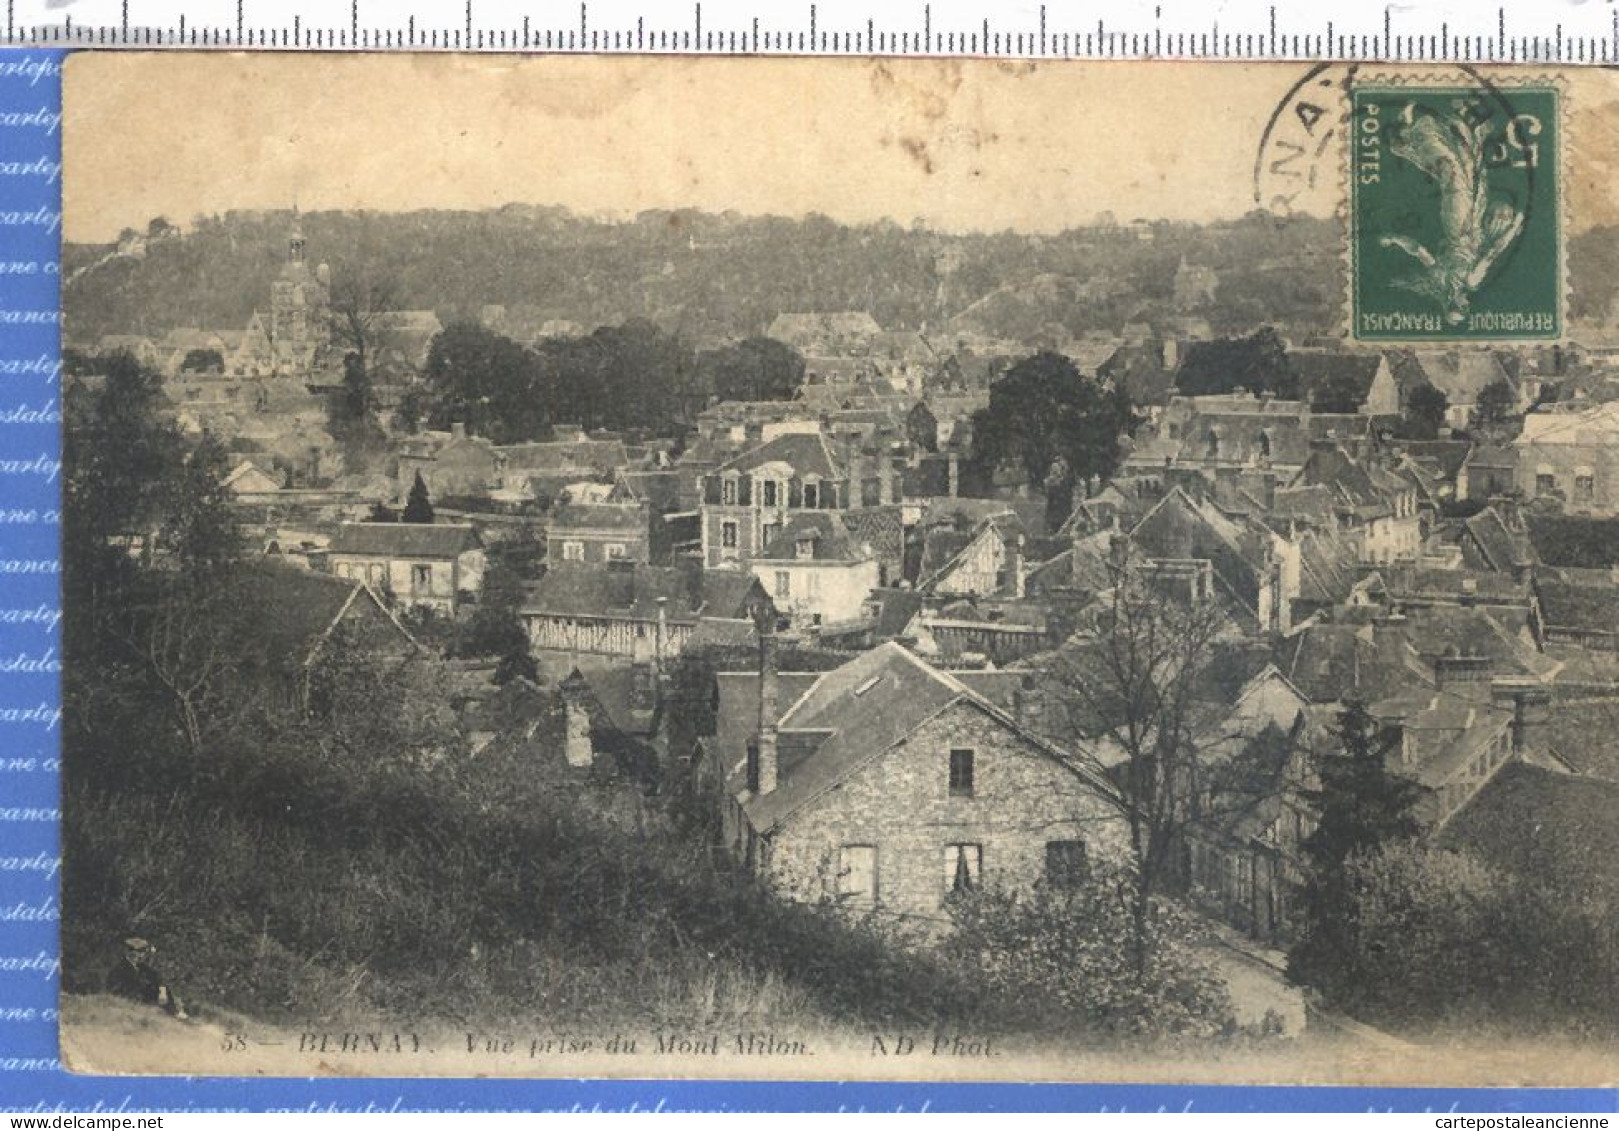 35955 / BERNAY Eure 1900s Quartier De La Ville Prise Du Mont MILON - NEURDEIN 58 - Bernay